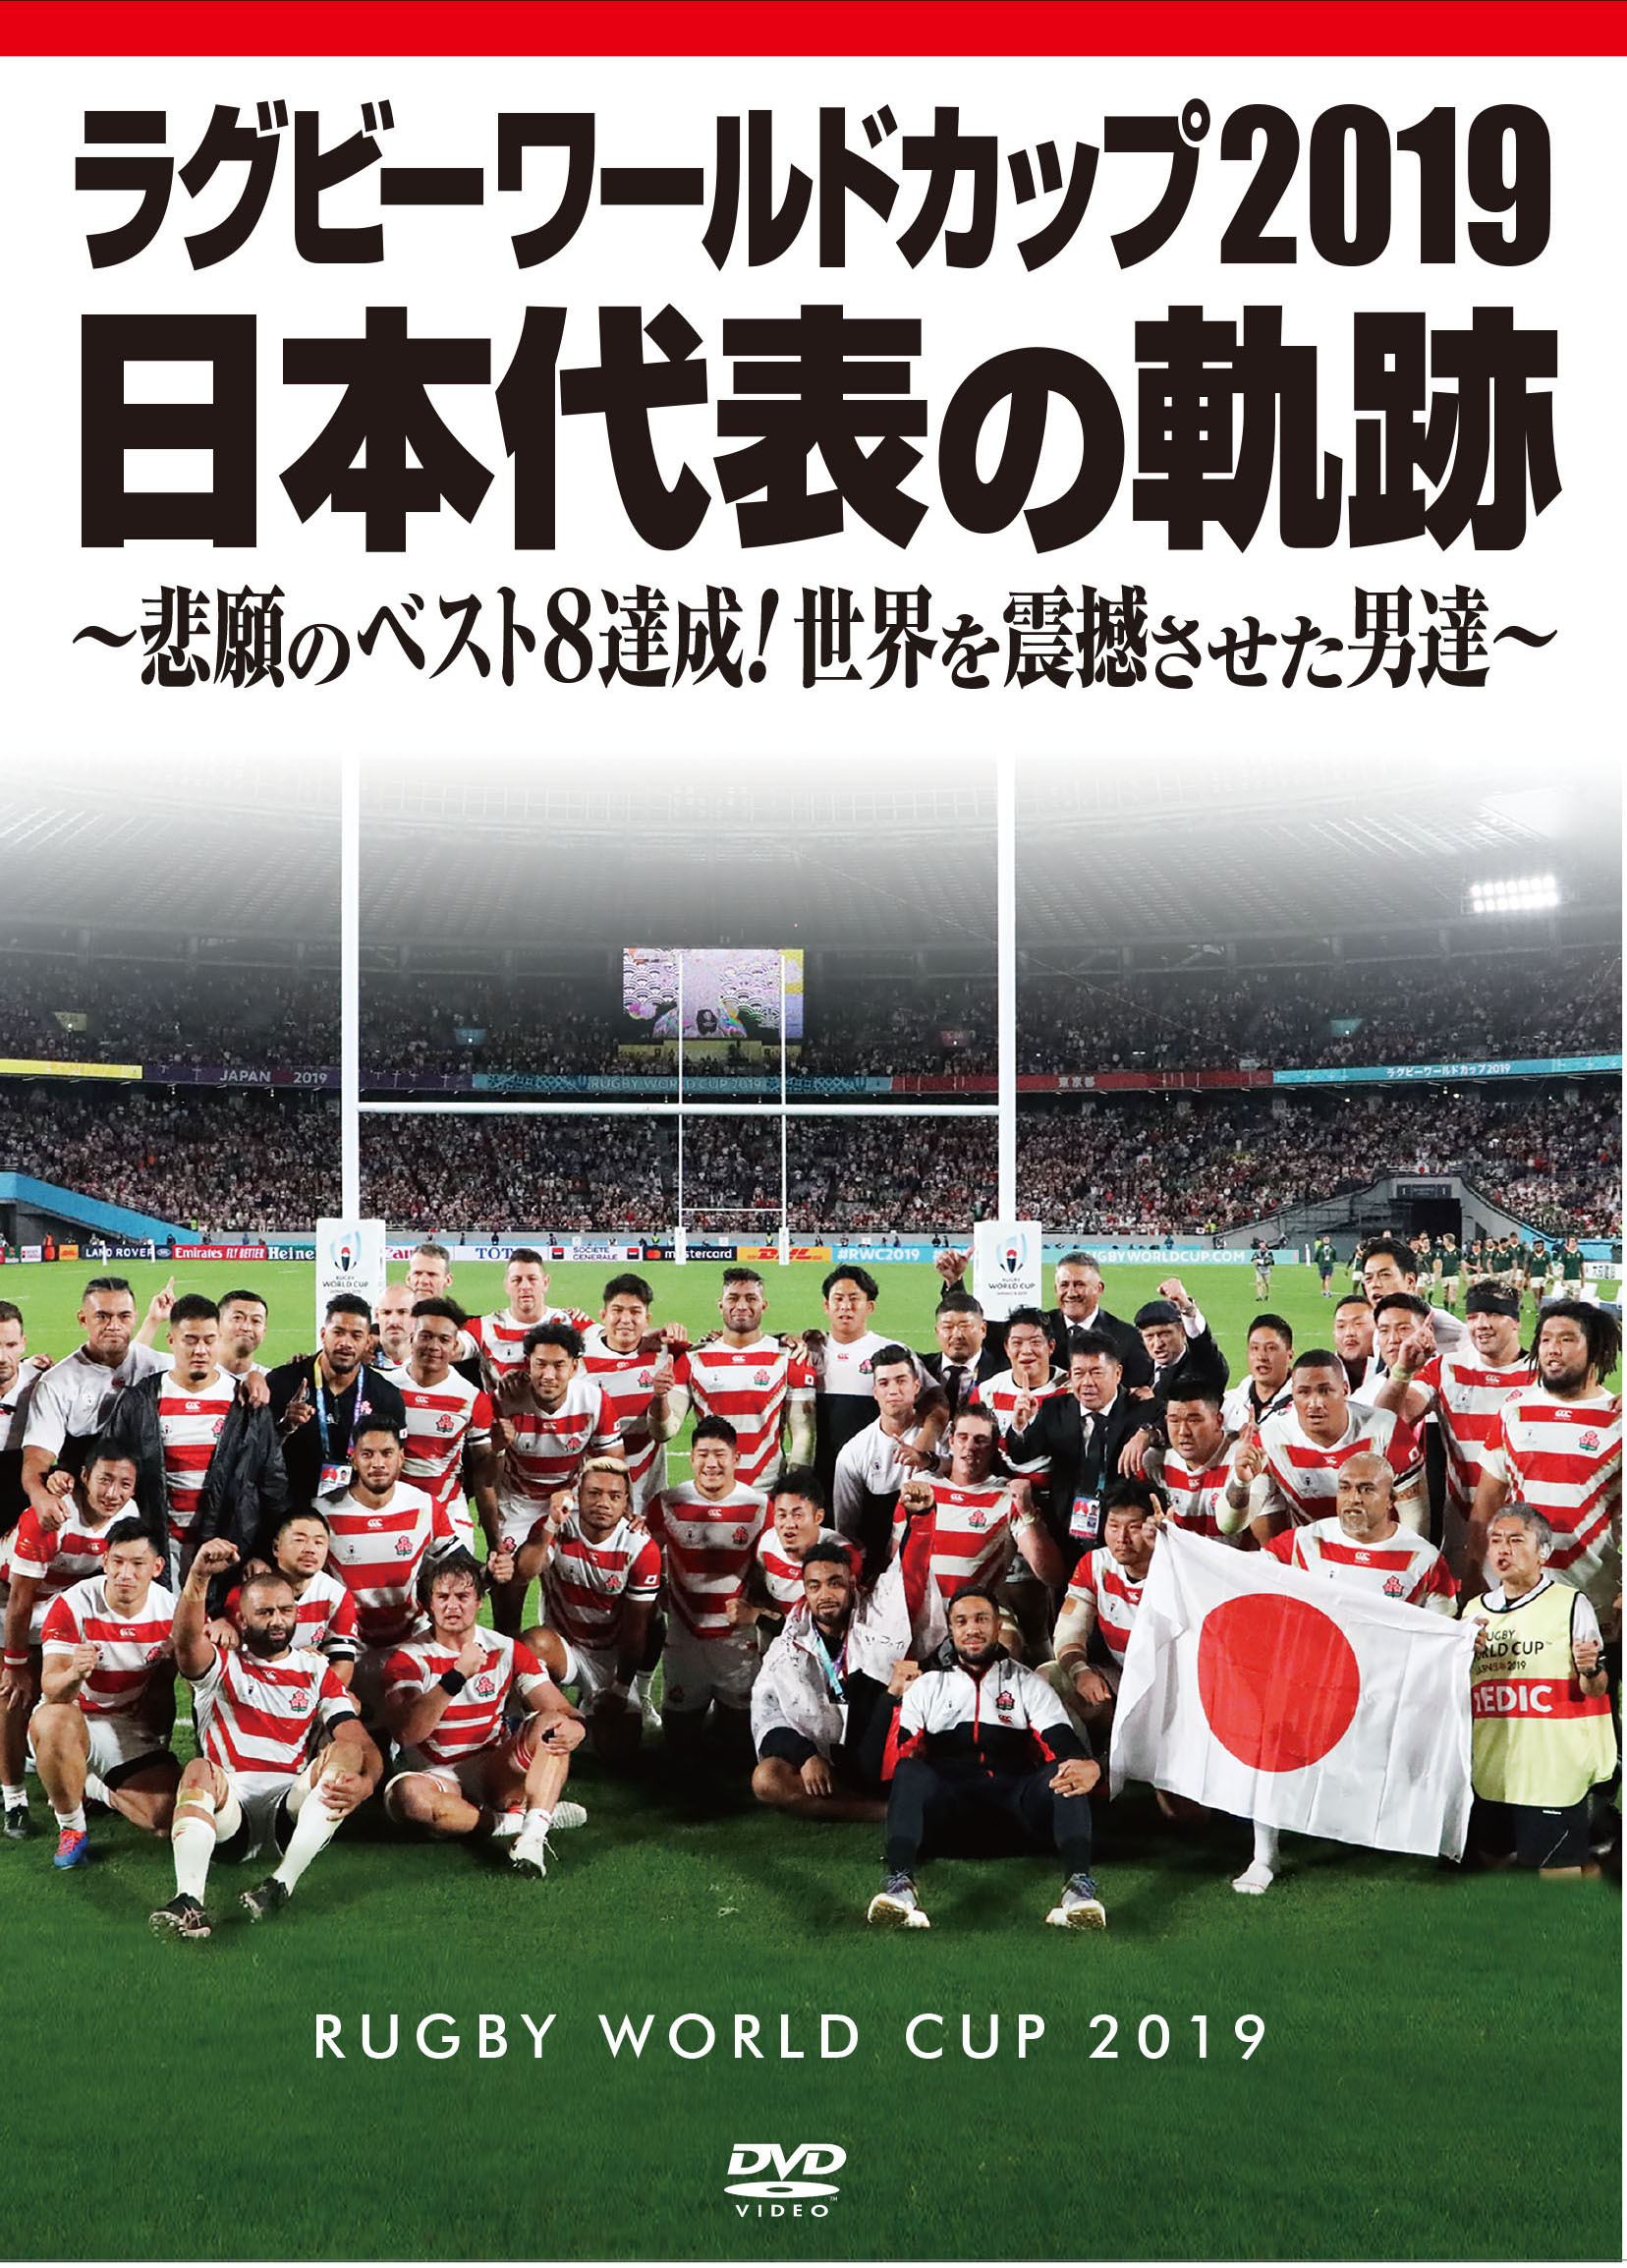 興奮と感動が蘇る ラグビーw杯日本代表全試合ノーカットdvdが12月に発売 The Digest